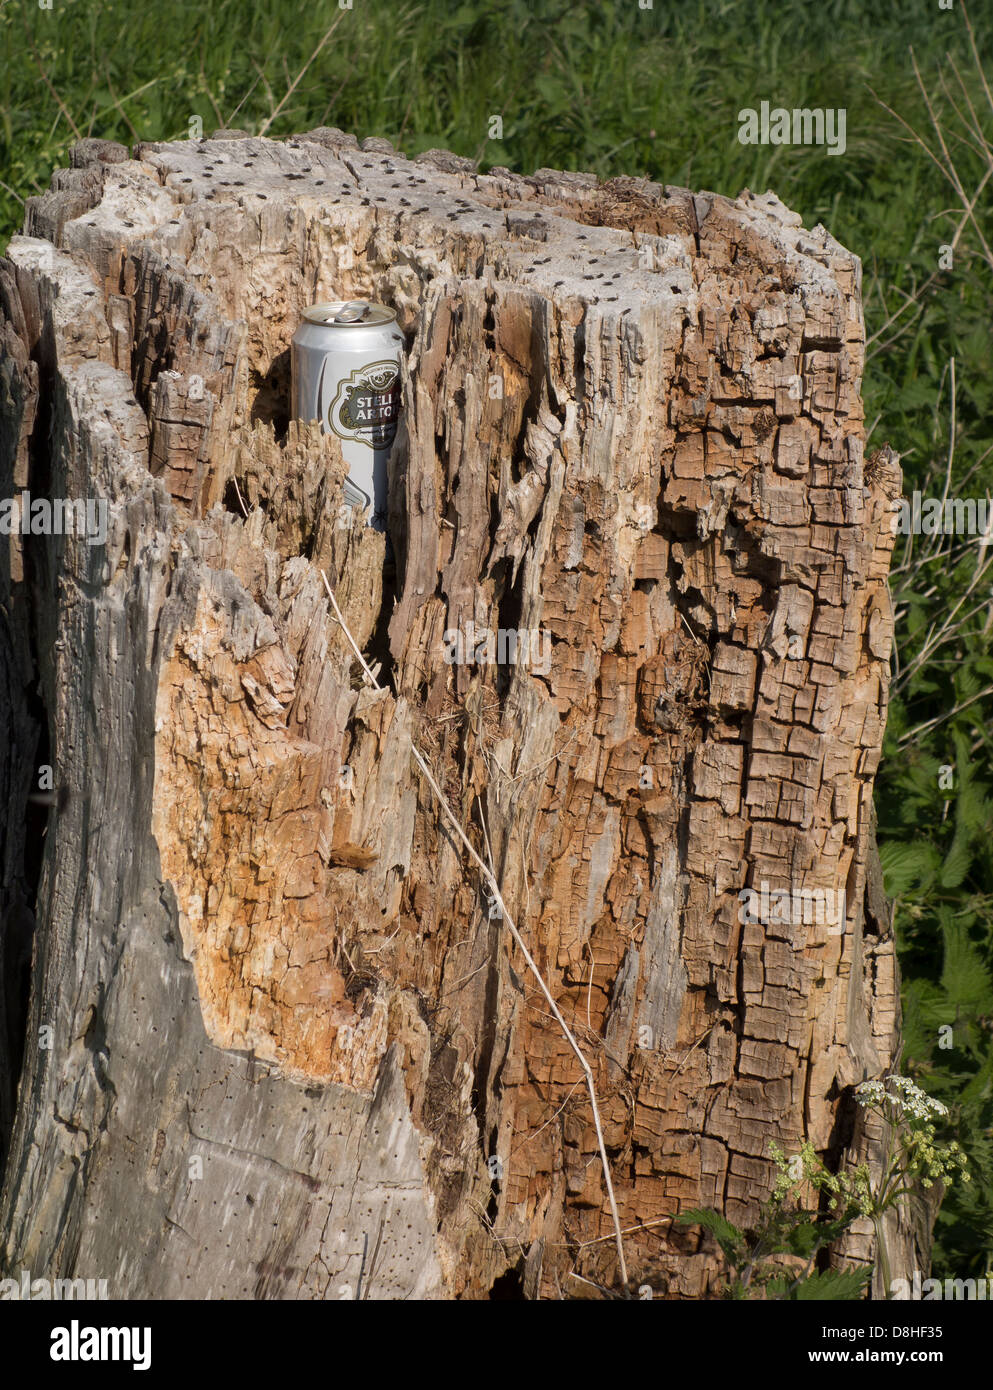 Empty beer can left in dead tree stump Stock Photo